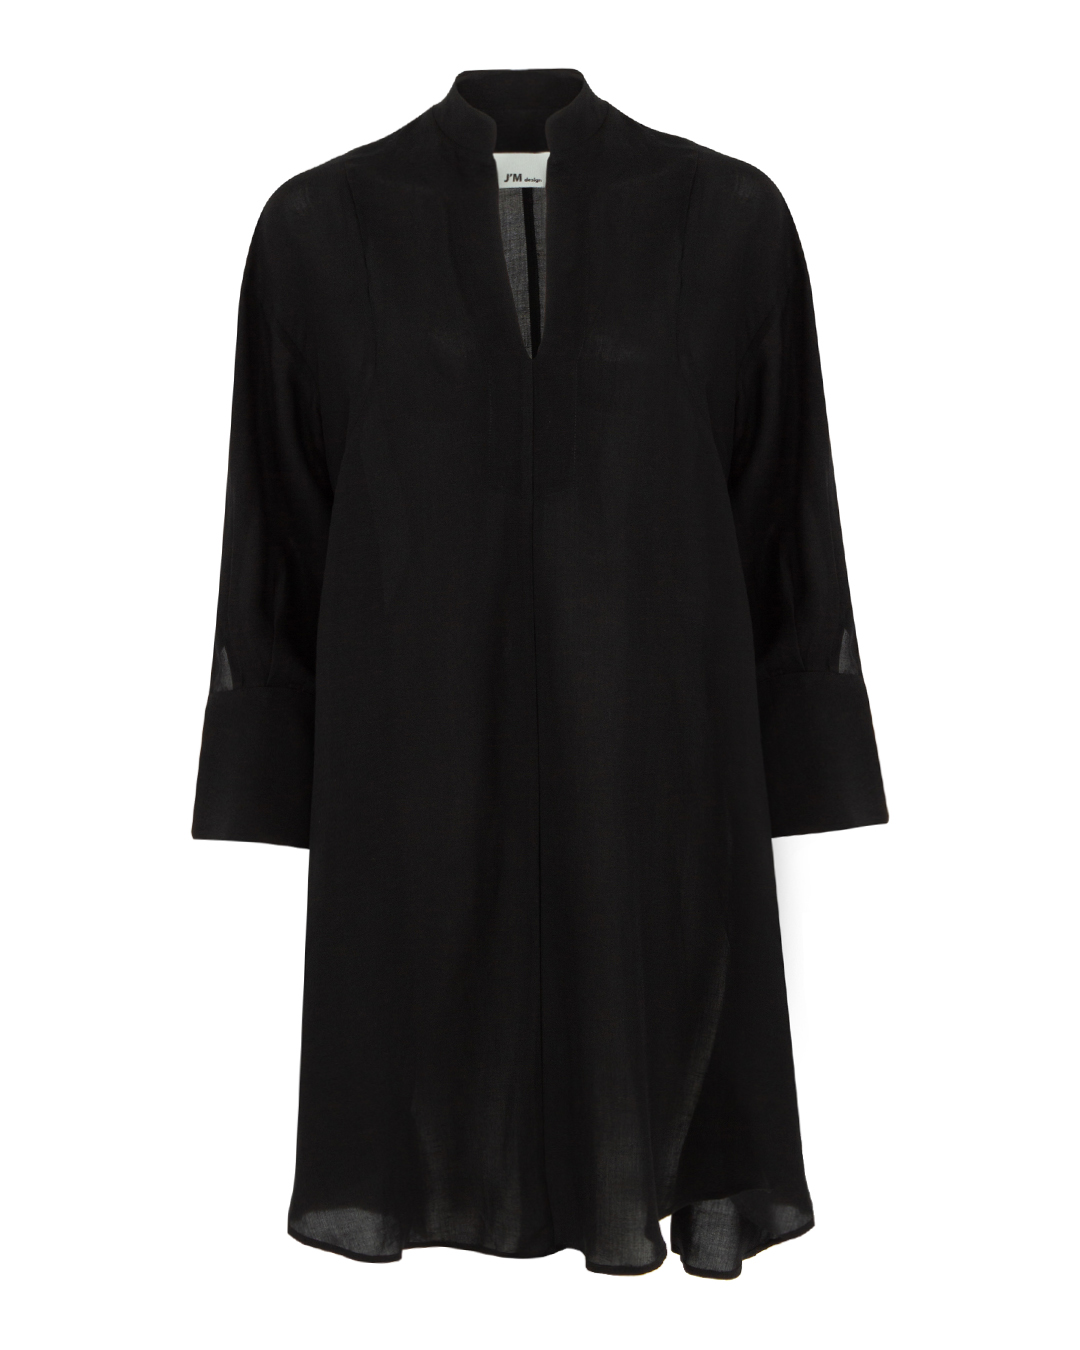 платье J.M design JM-CA206 черный 2xs, размер 2xs - фото 1